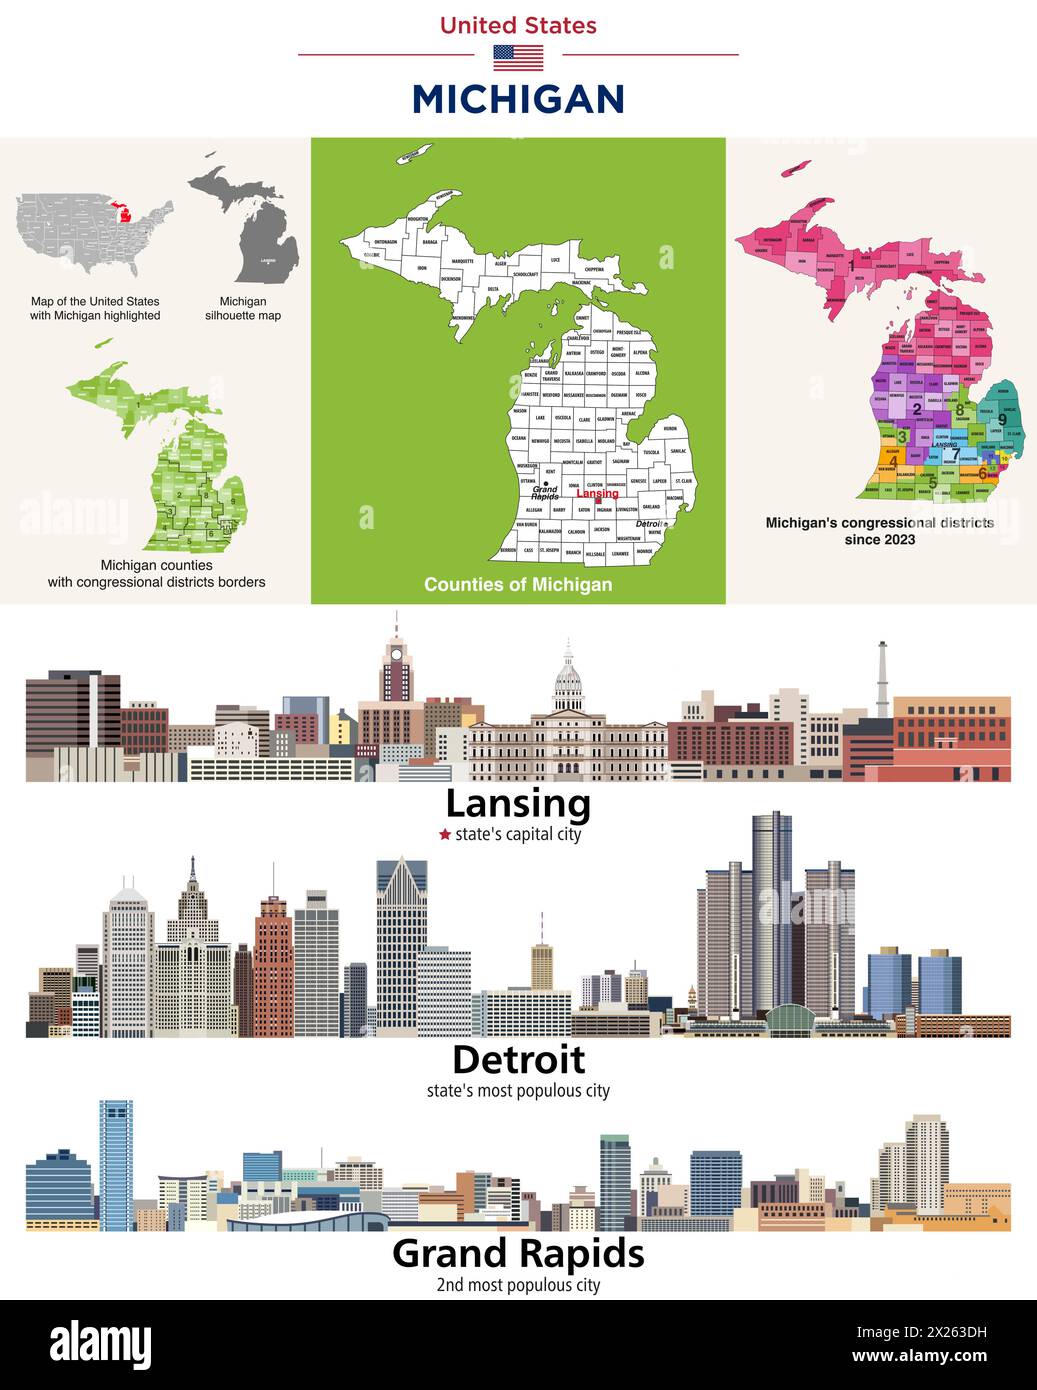 Carte des comtés du Michigan et carte des districts du Congrès depuis 2023. Lansing (capitale de l'État), Detroit et Grand Rapids (ci le plus peuplé de l'État Illustration de Vecteur